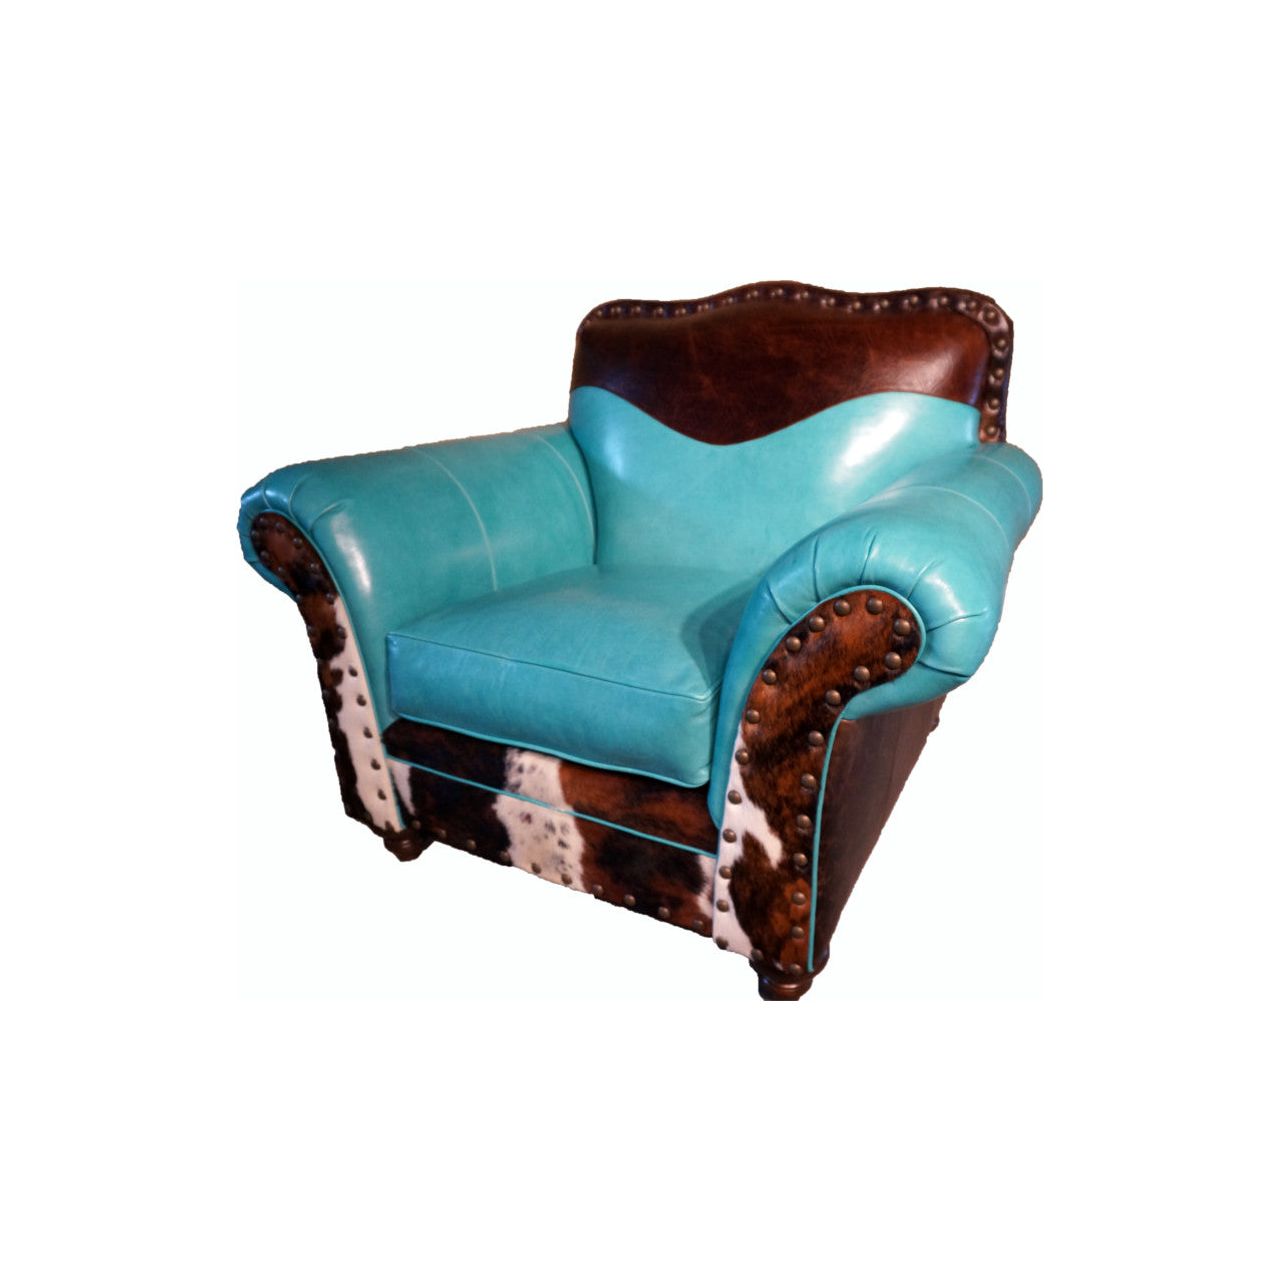 Durango Western Leather Club Chair